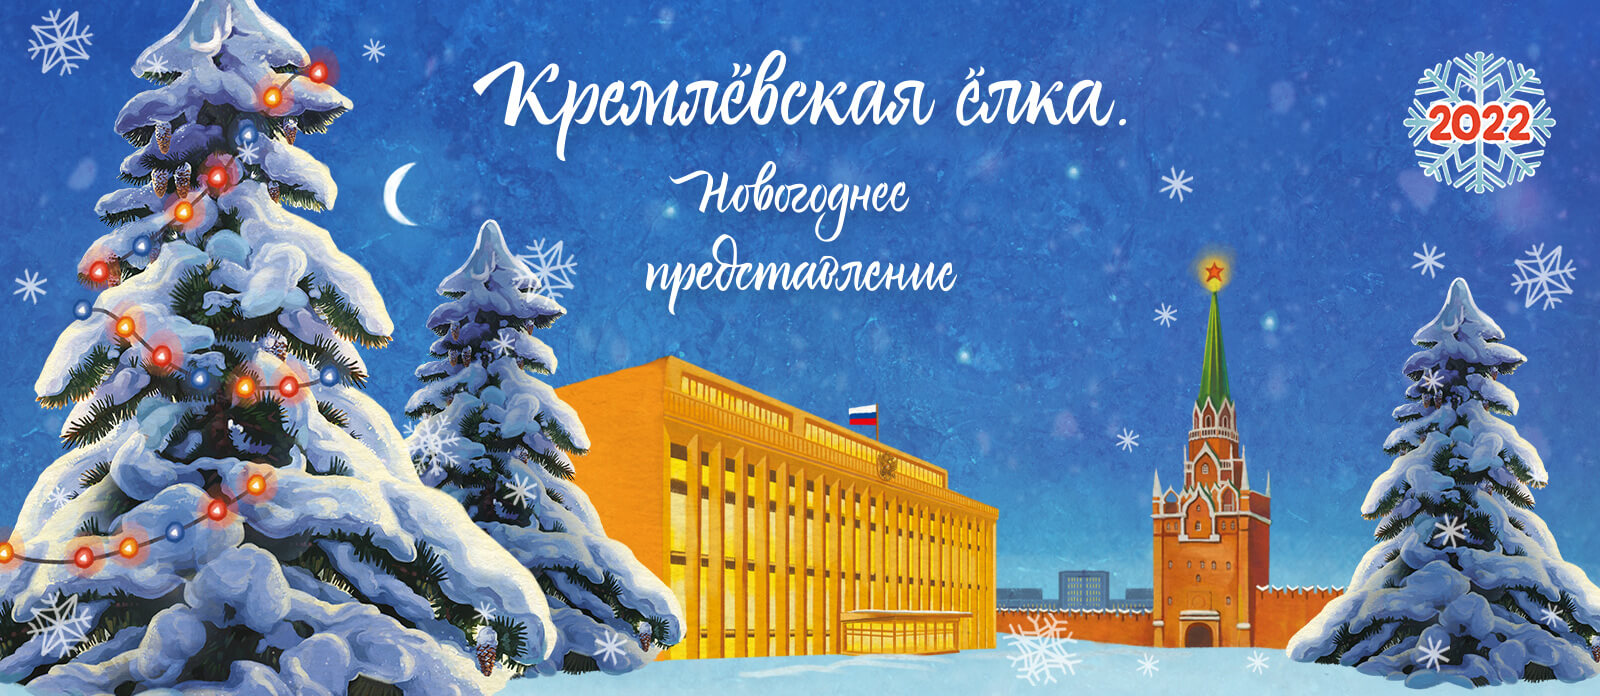 Кремлёвская ёлка 2022. Новогоднее представление